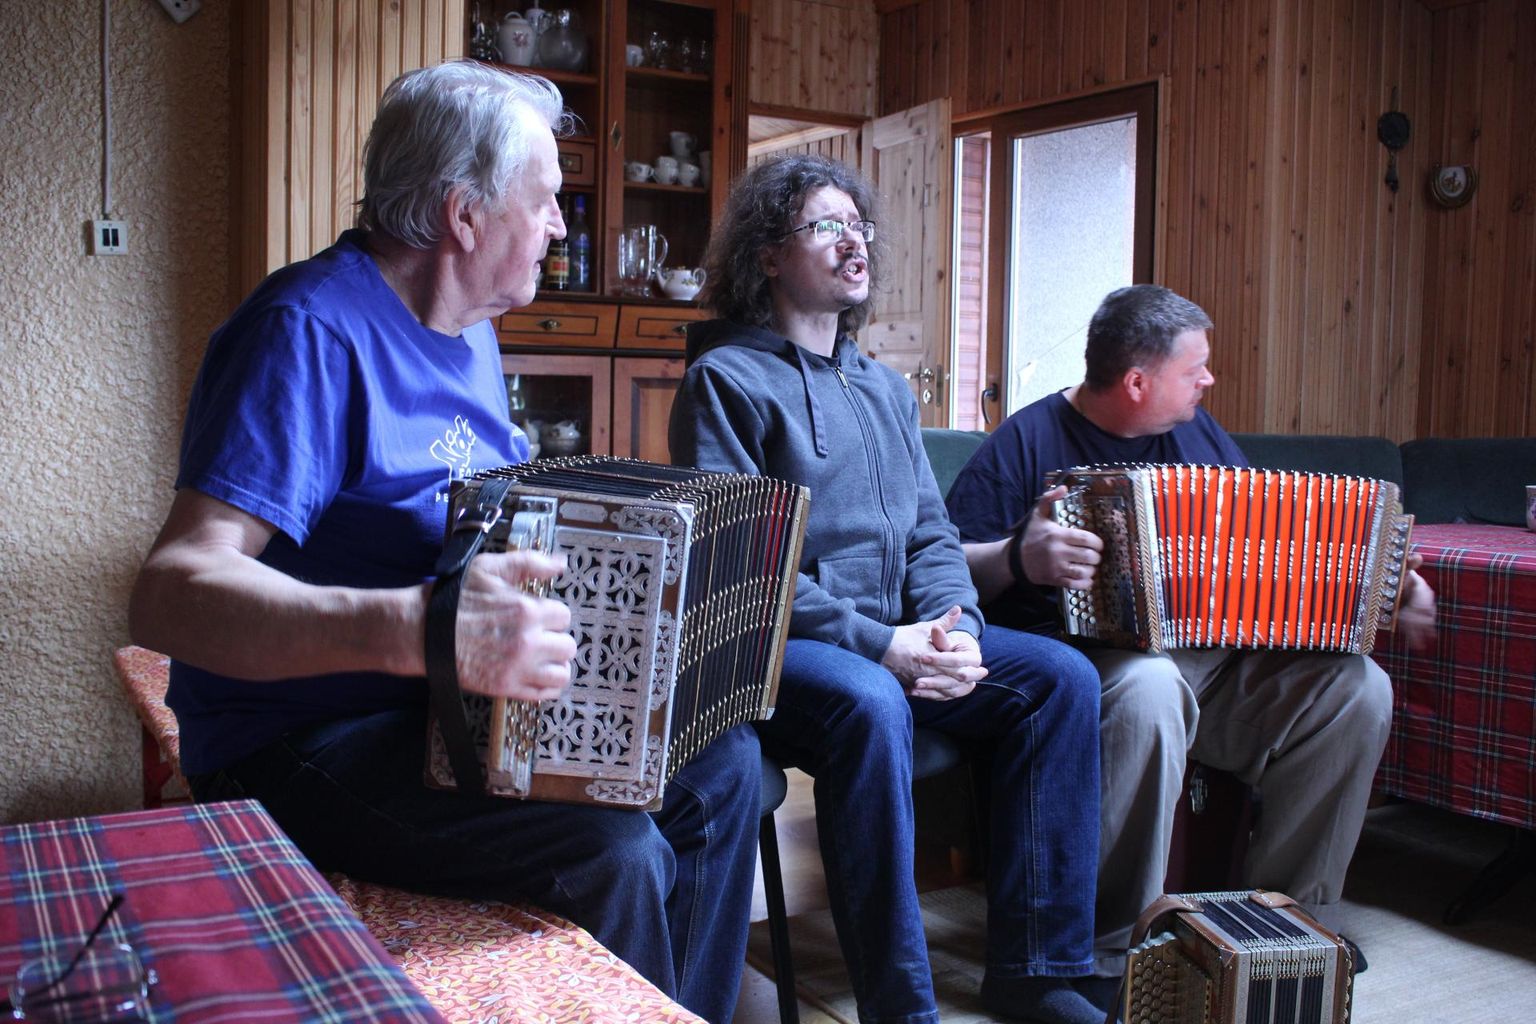 Lõõtsa Väntsutajate muusika on täienenud lauluga ning koos esinevad nad parasjagu koosseisus Kalle Raidsalu (vasakult), Vend Frederik ja Rene Raidsalu.